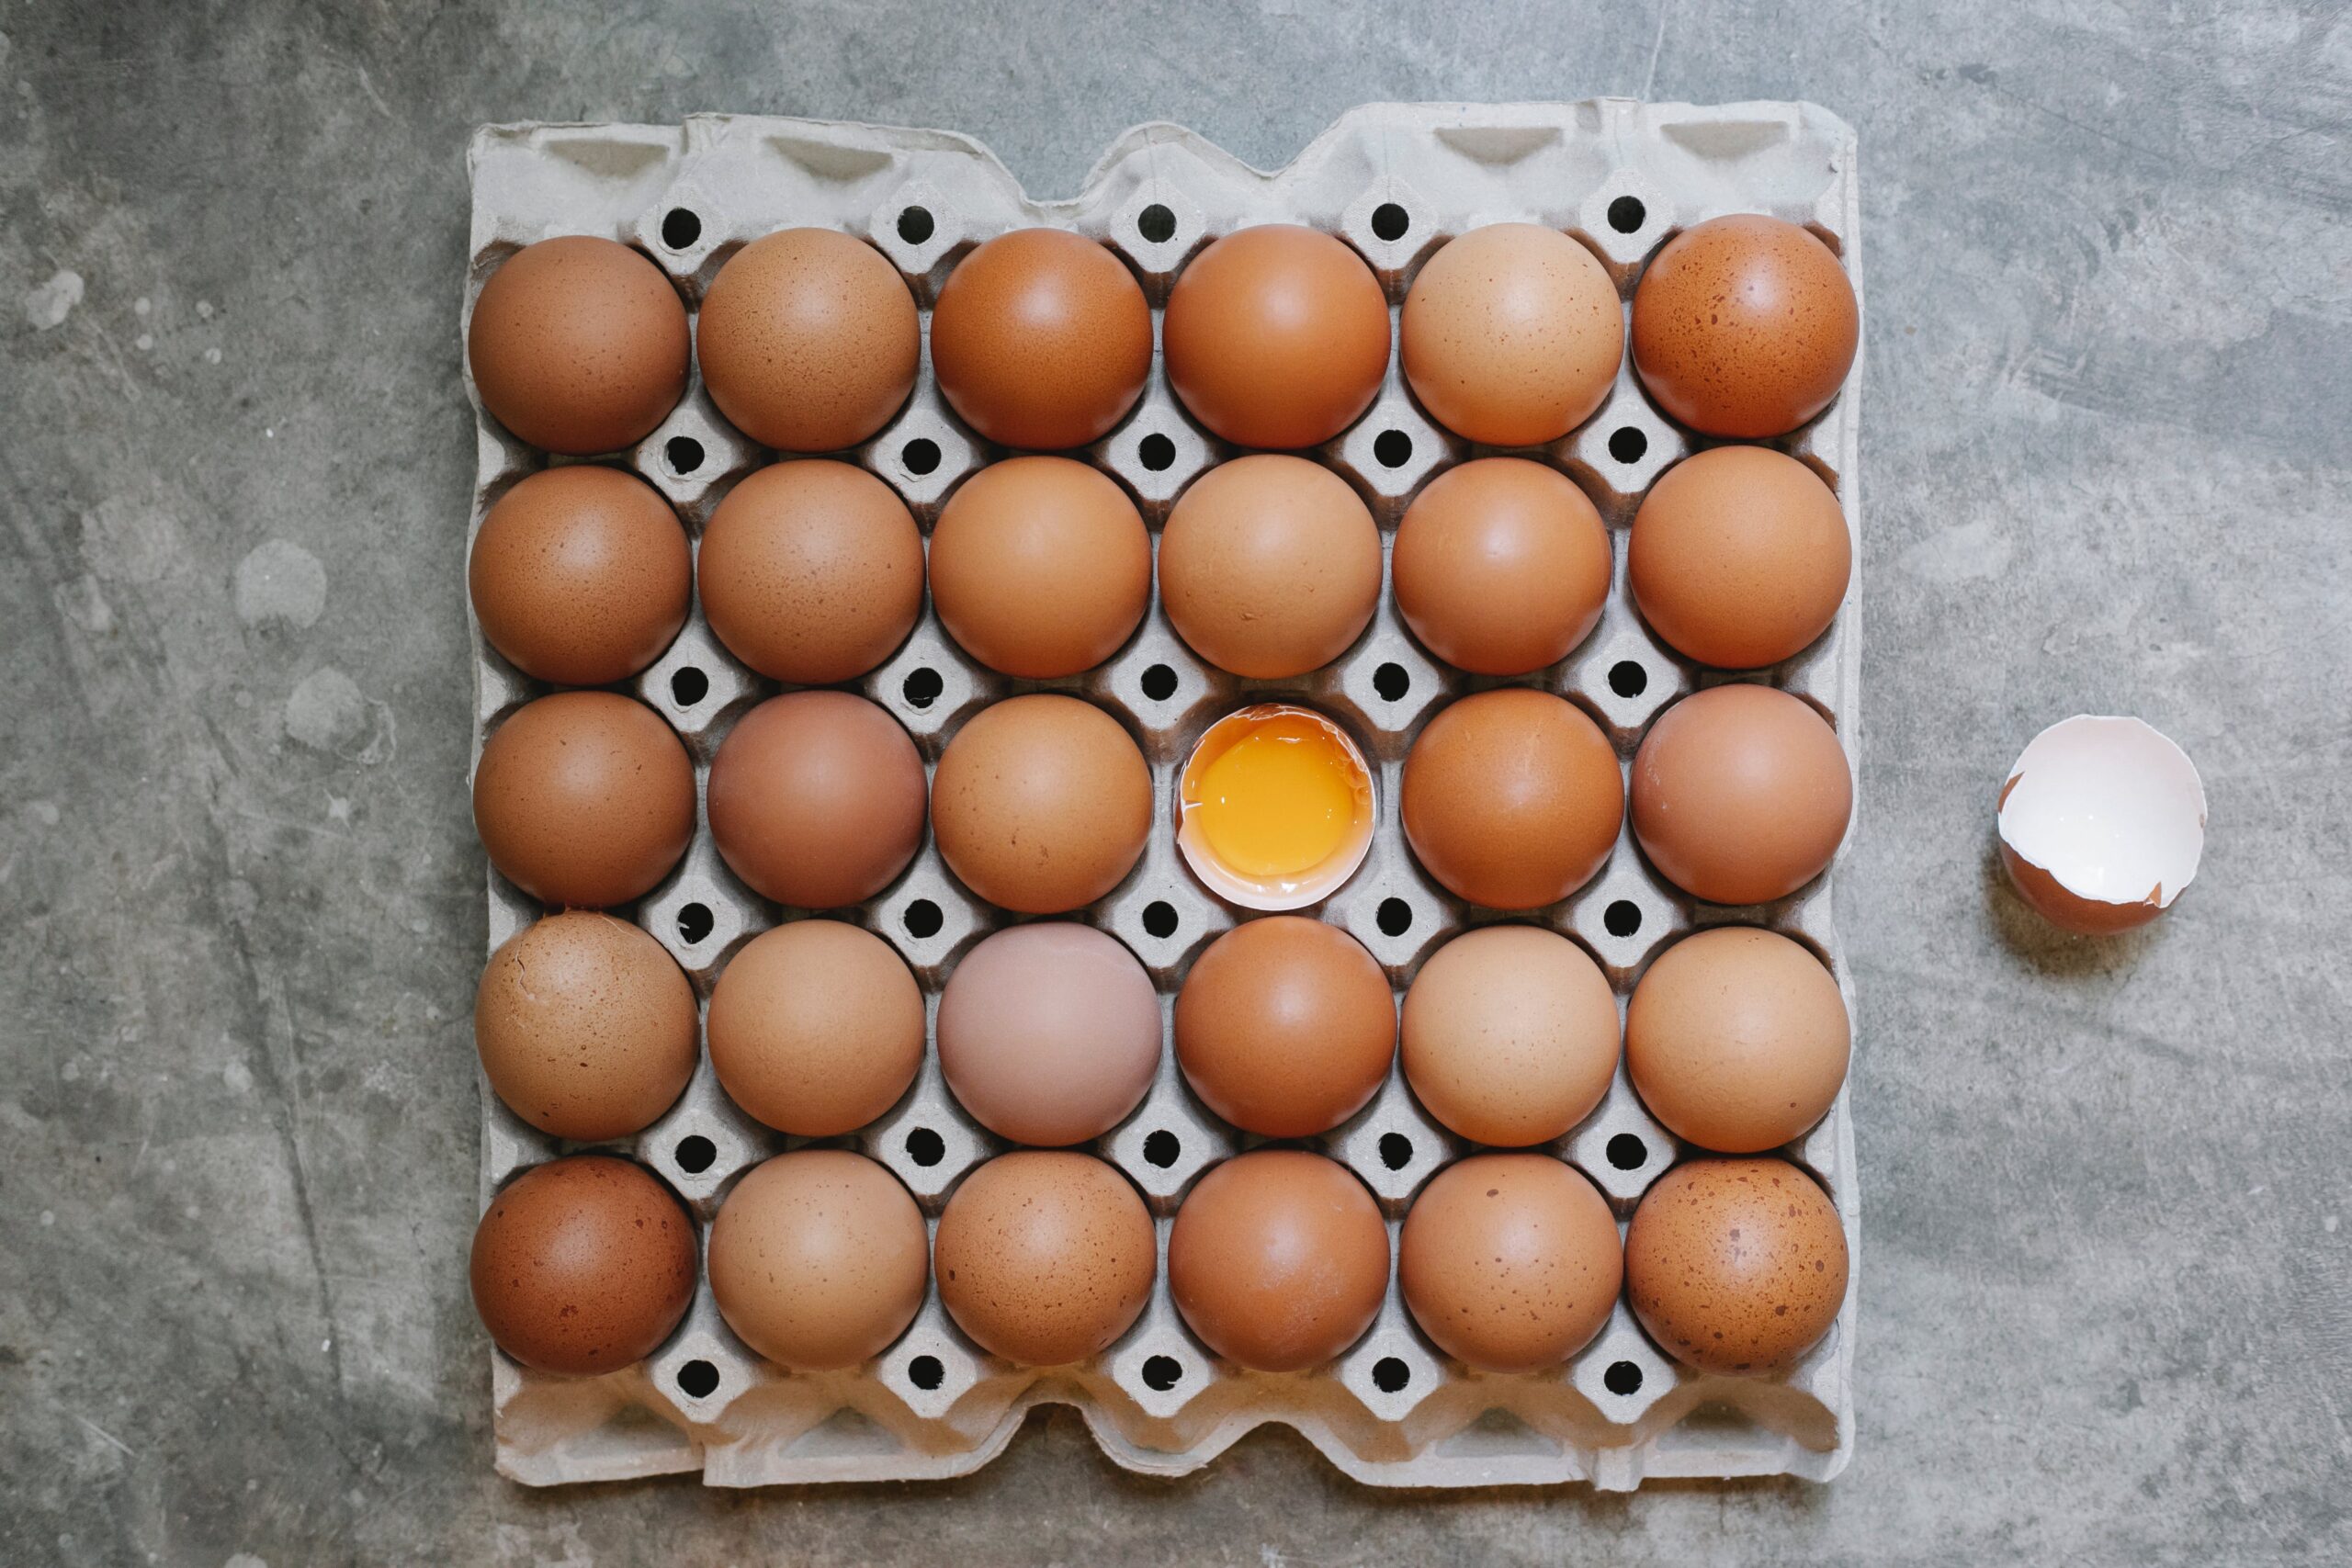 Tiempo de cocción de huevos de gallina: Guía completa